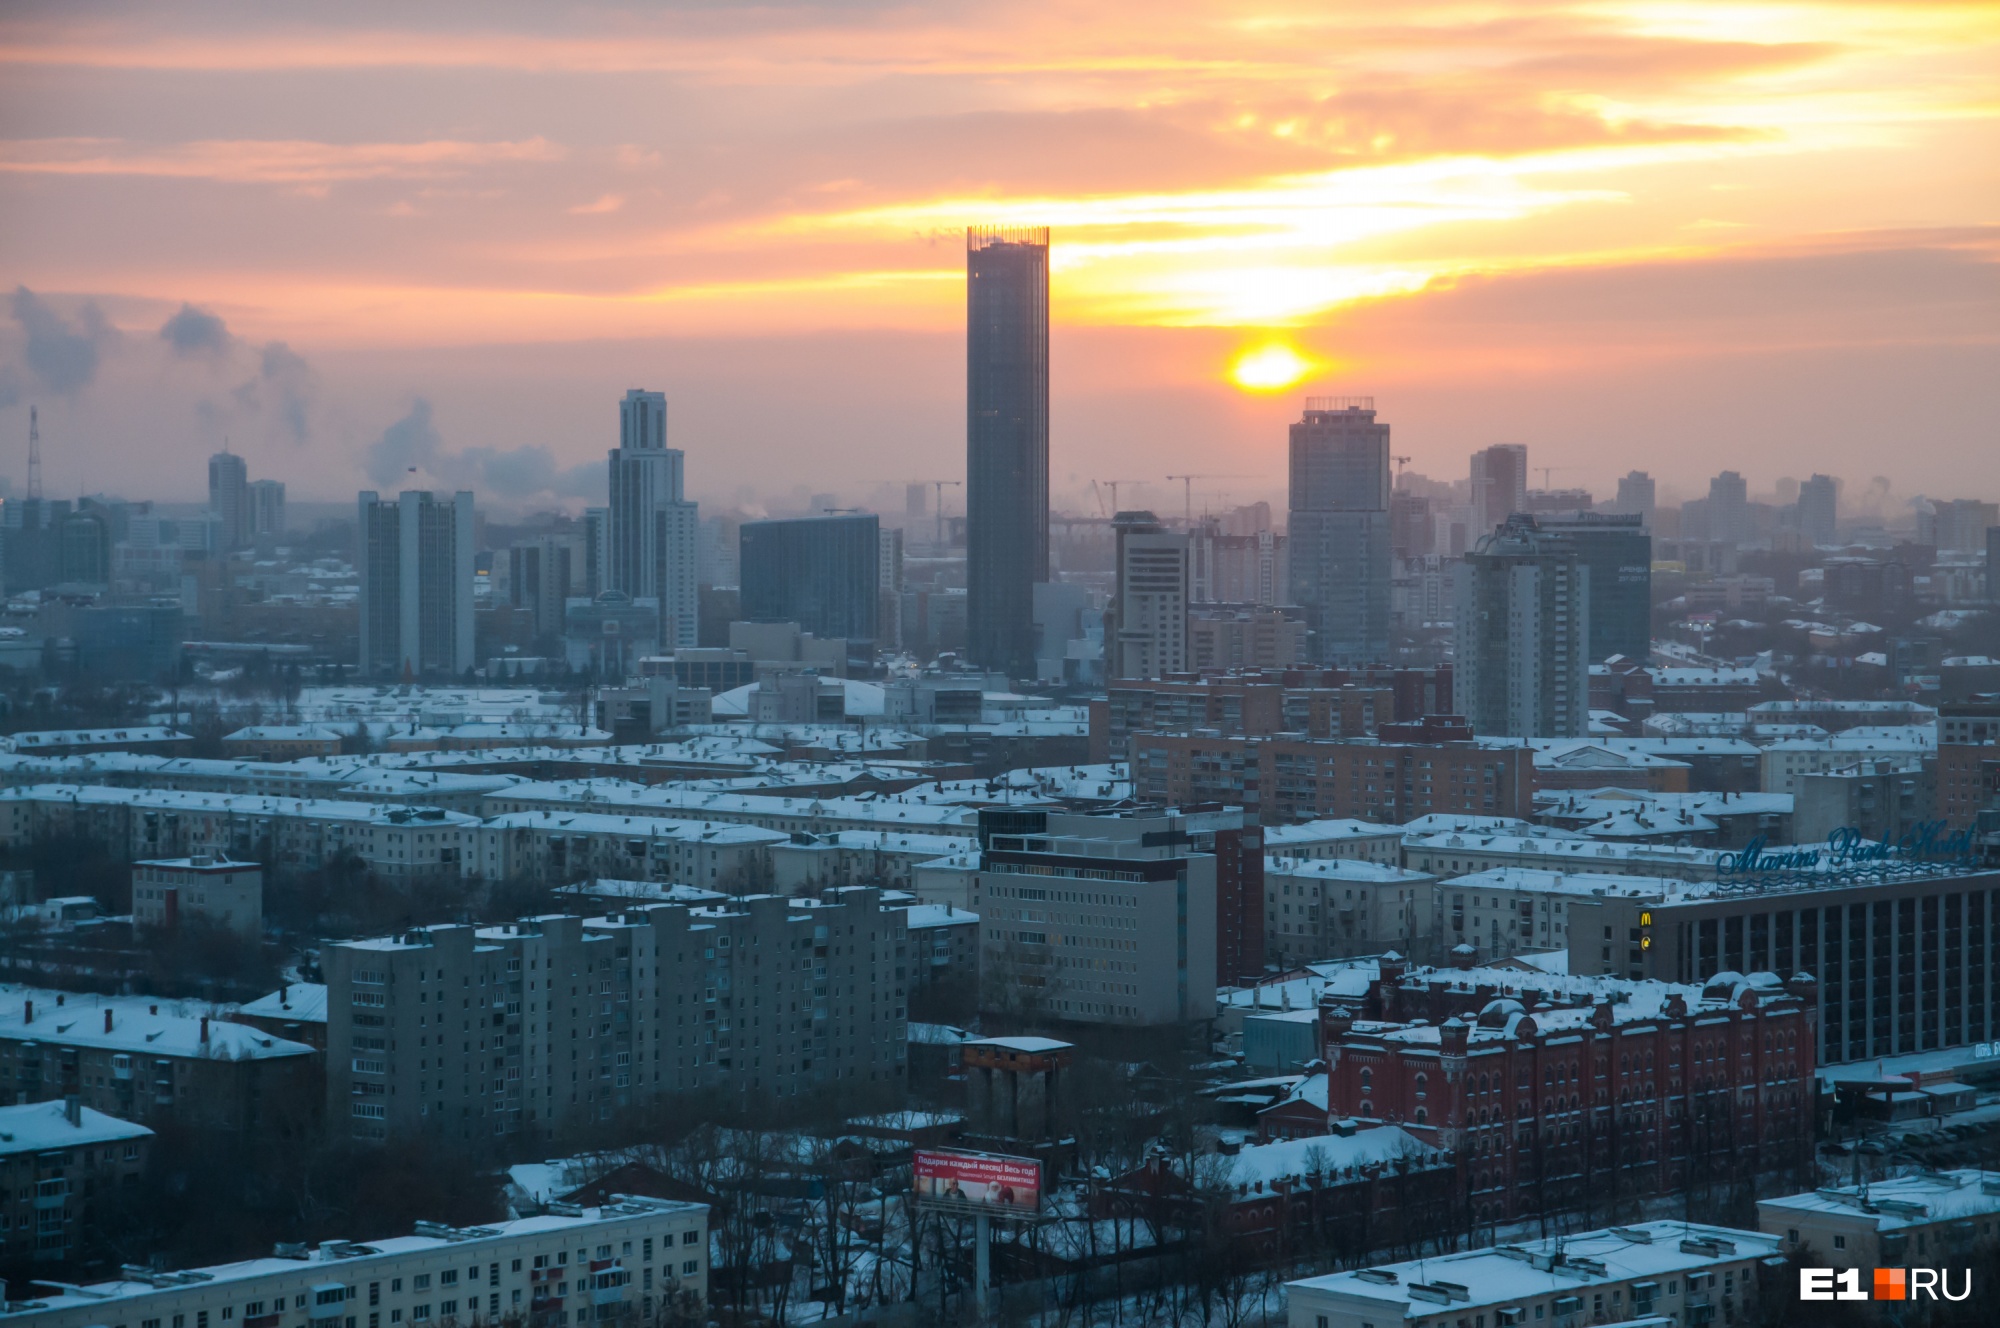 По мнению Геннадия Черных, проблема с точечной застройкой в Екатеринбурге сильно преувеличена